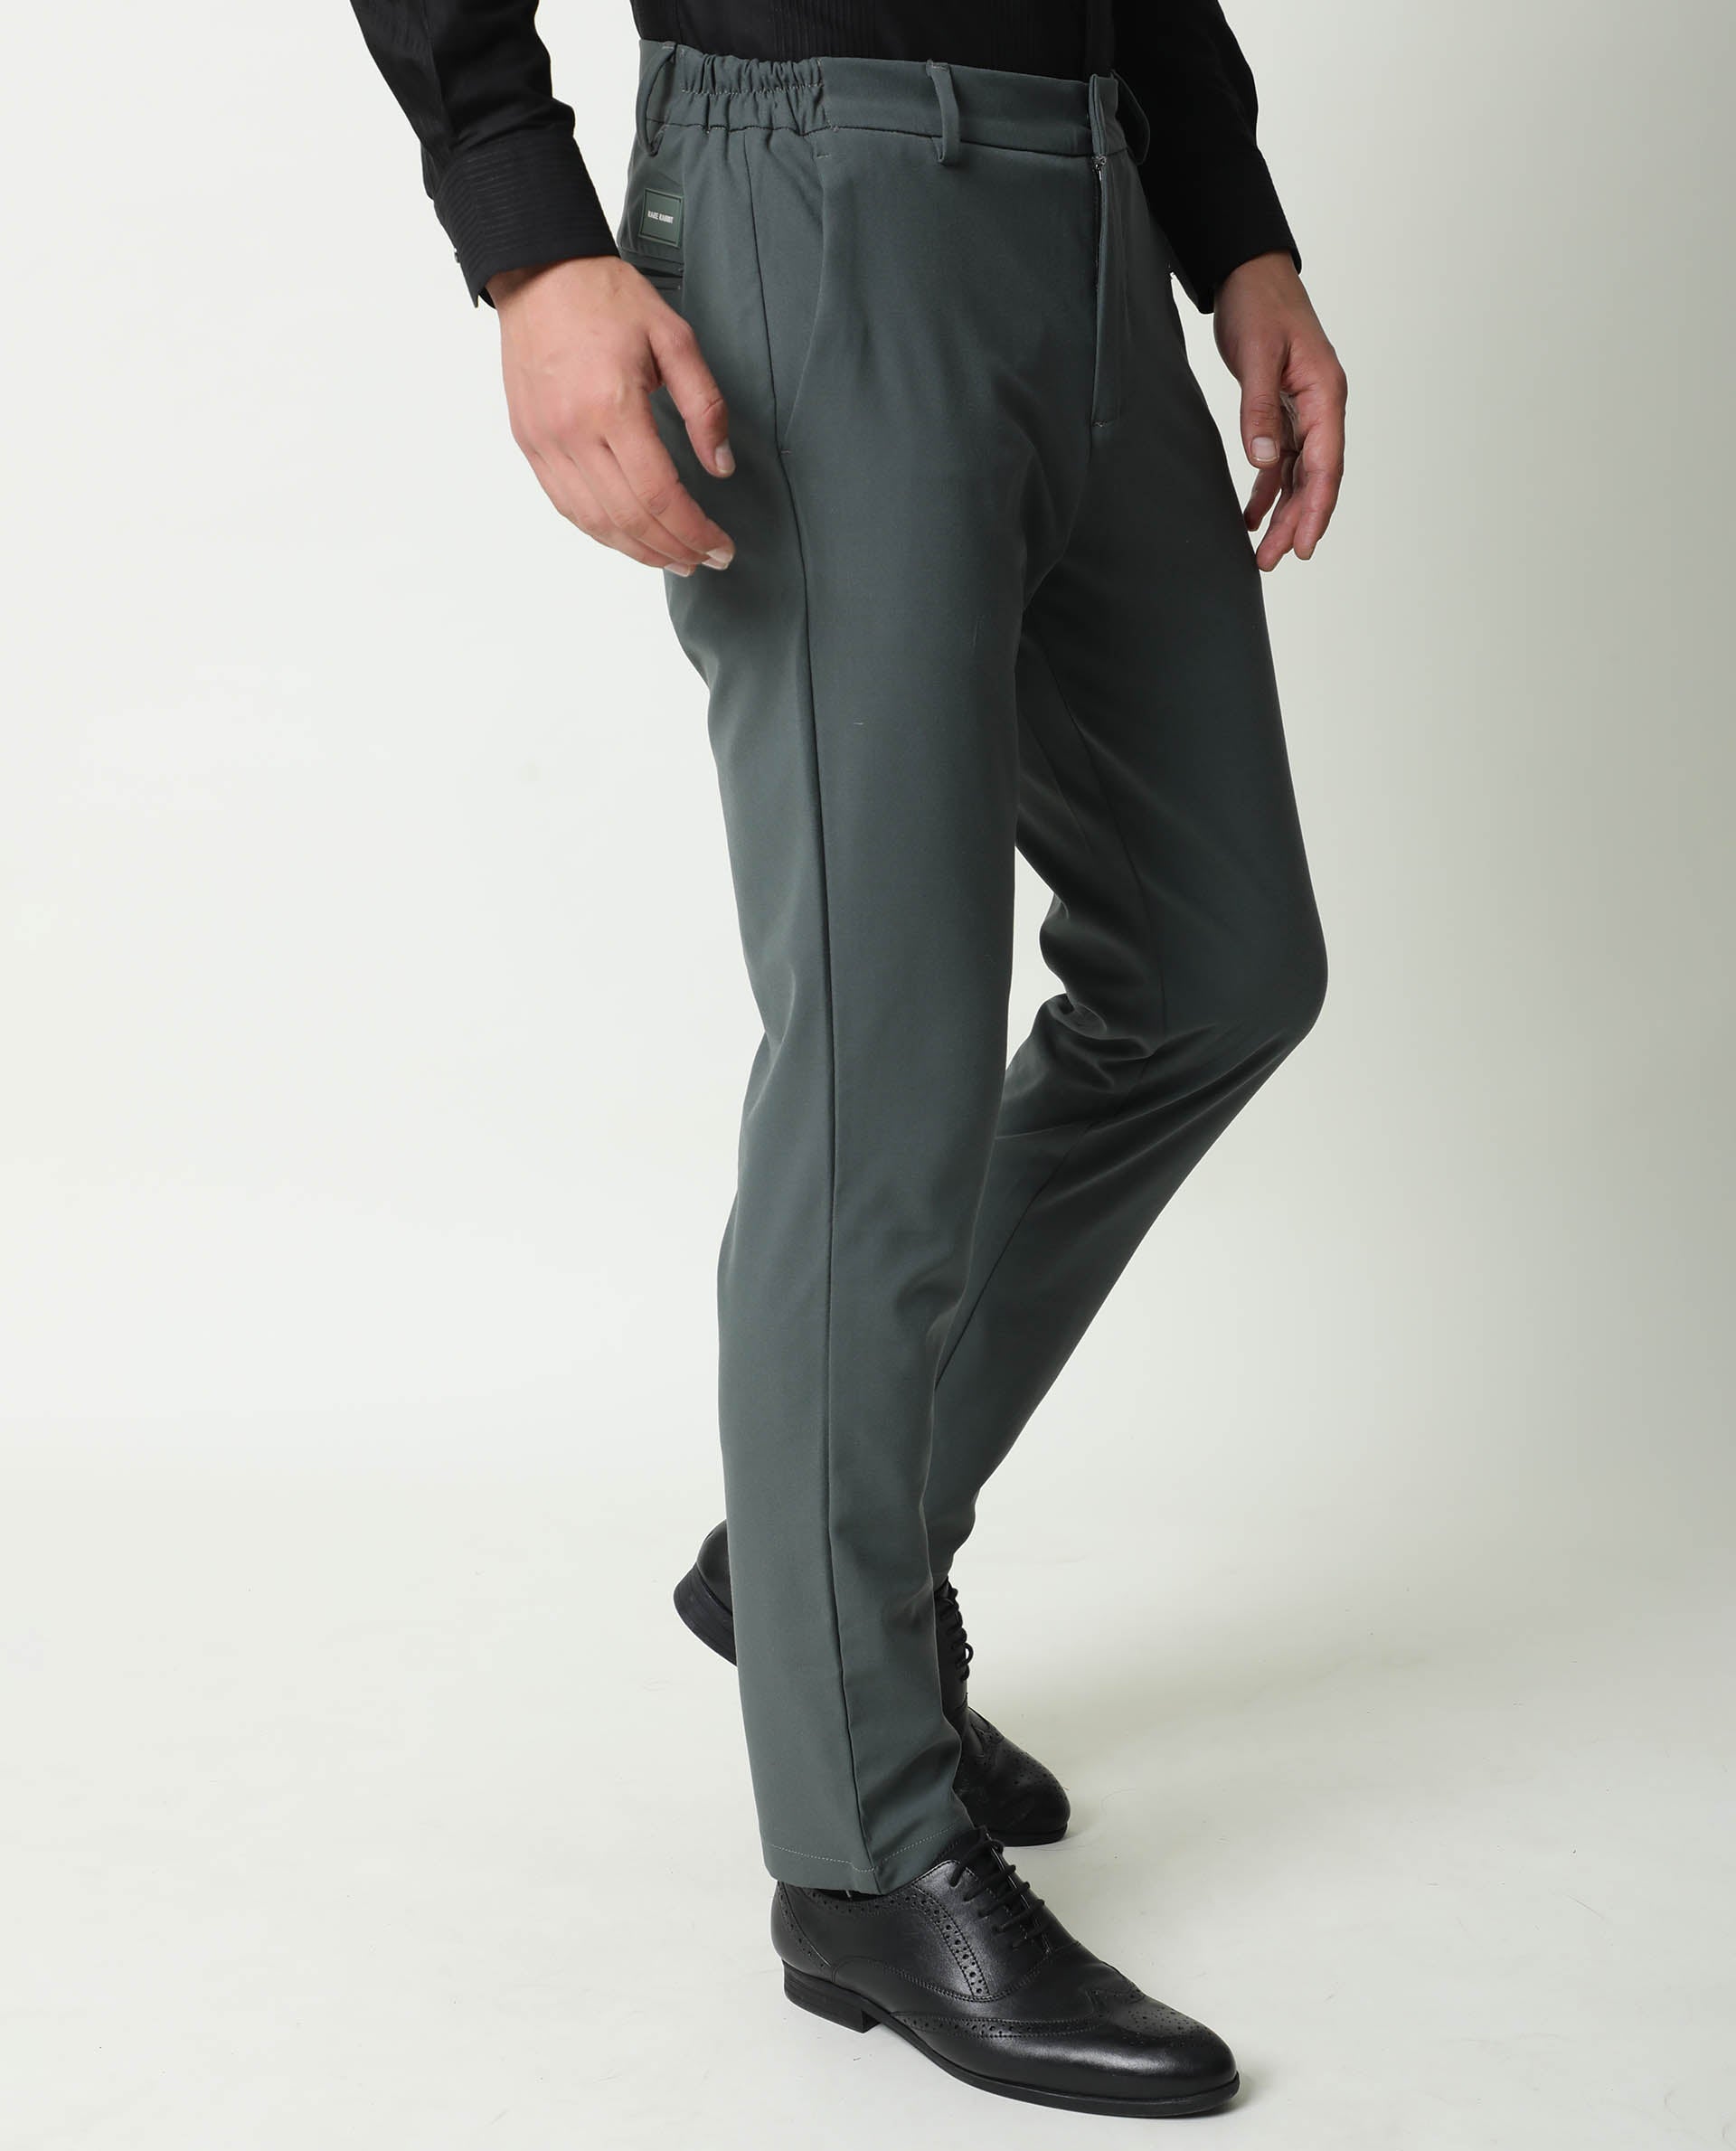 Buy RARE RABBIT Men's Slim Fit Benoni Solid Stretch Denim Pants (Teal  Green, 38) at Amazon.in